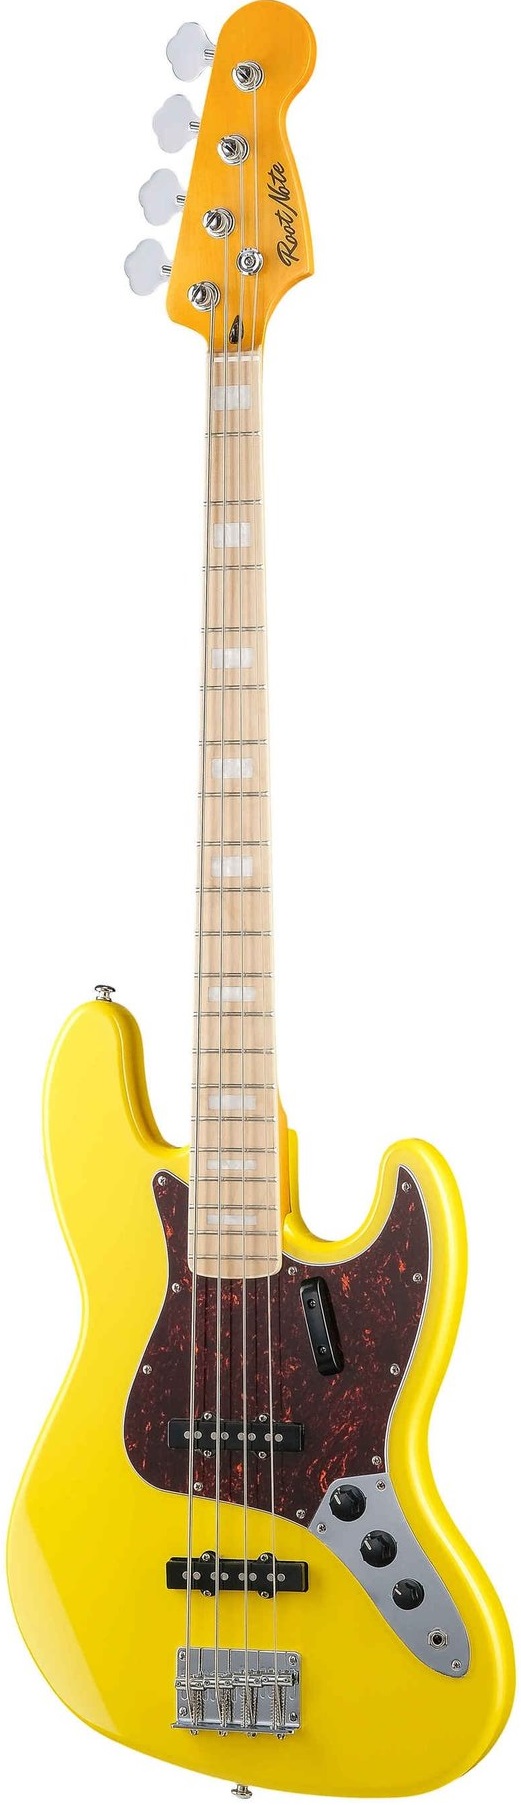 Бас-гитары Root Note JB001-VWH стандартная накладка для гитары с 11 отверстиями 3 слойная накладка с винтами для гитары st